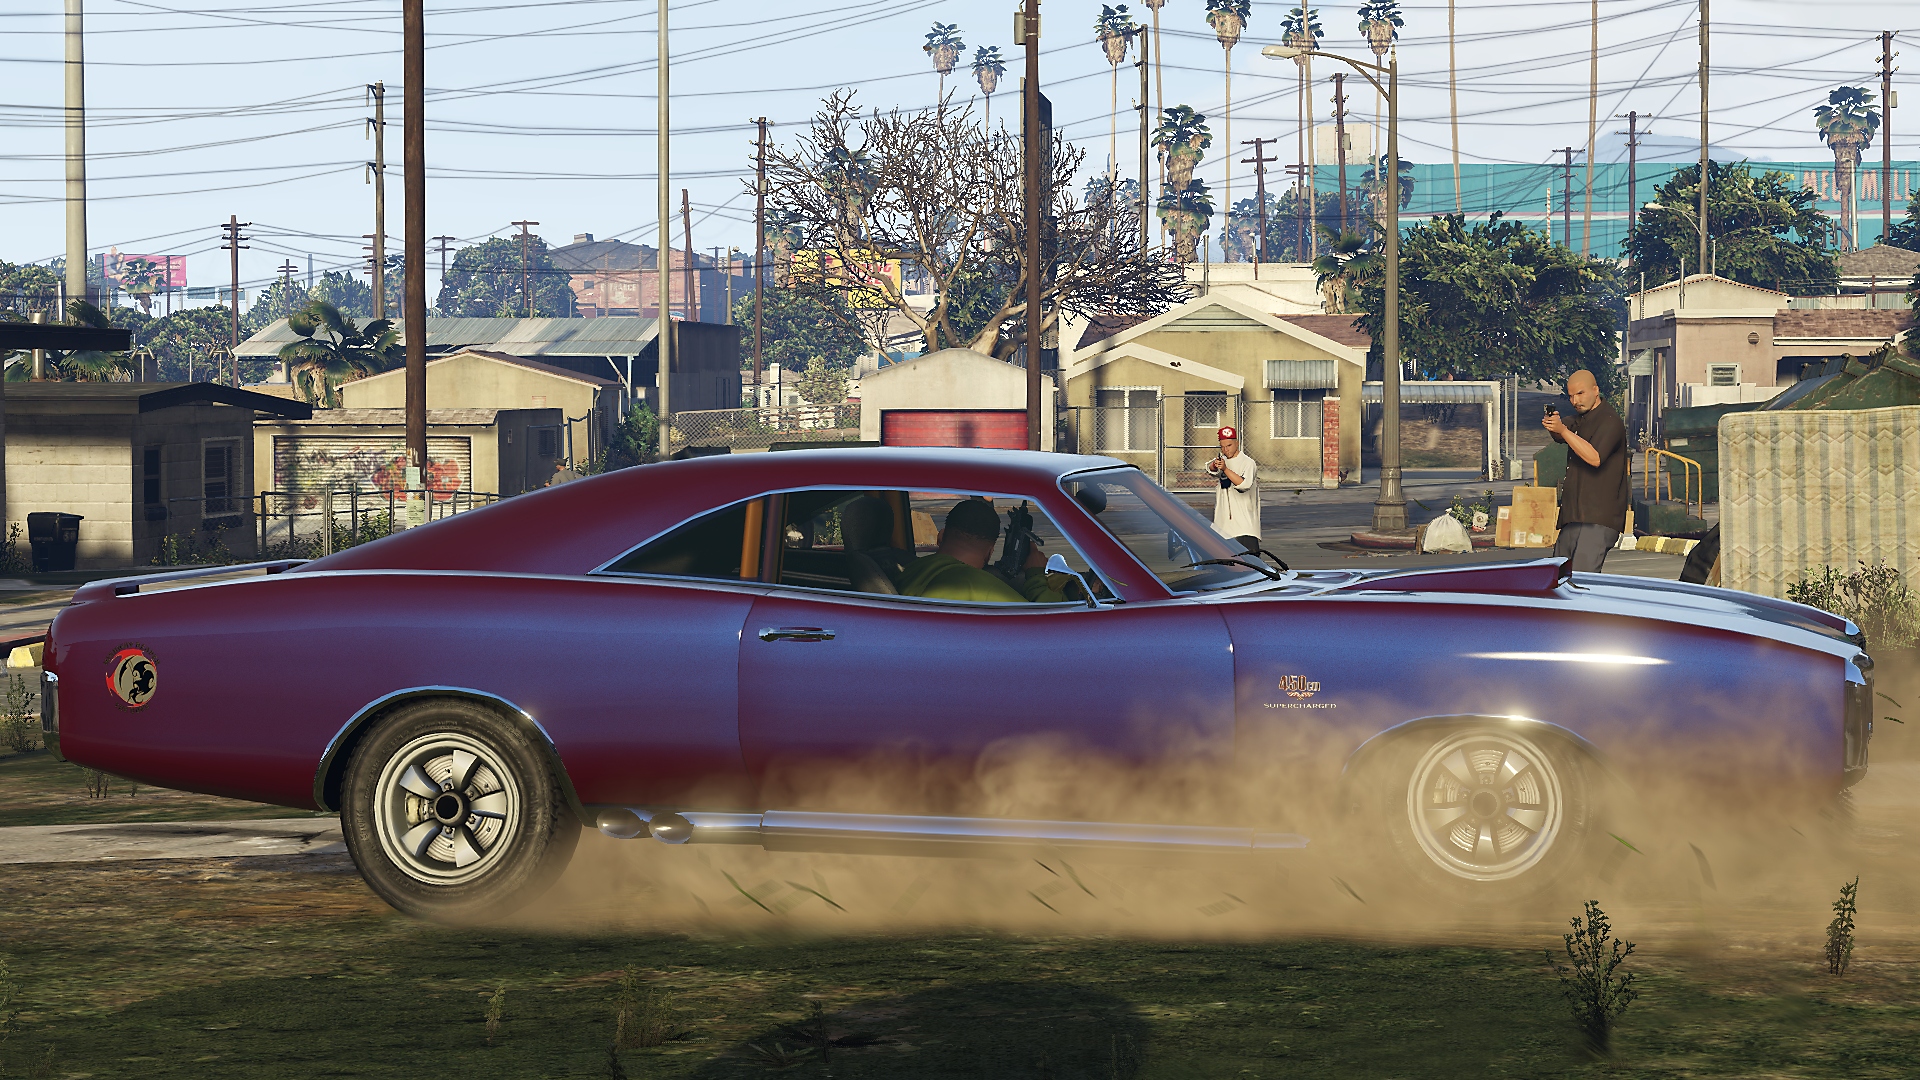 Grand Theft Auto V - Captura de tela mostrando um carro esportivo roxo queimando borracha